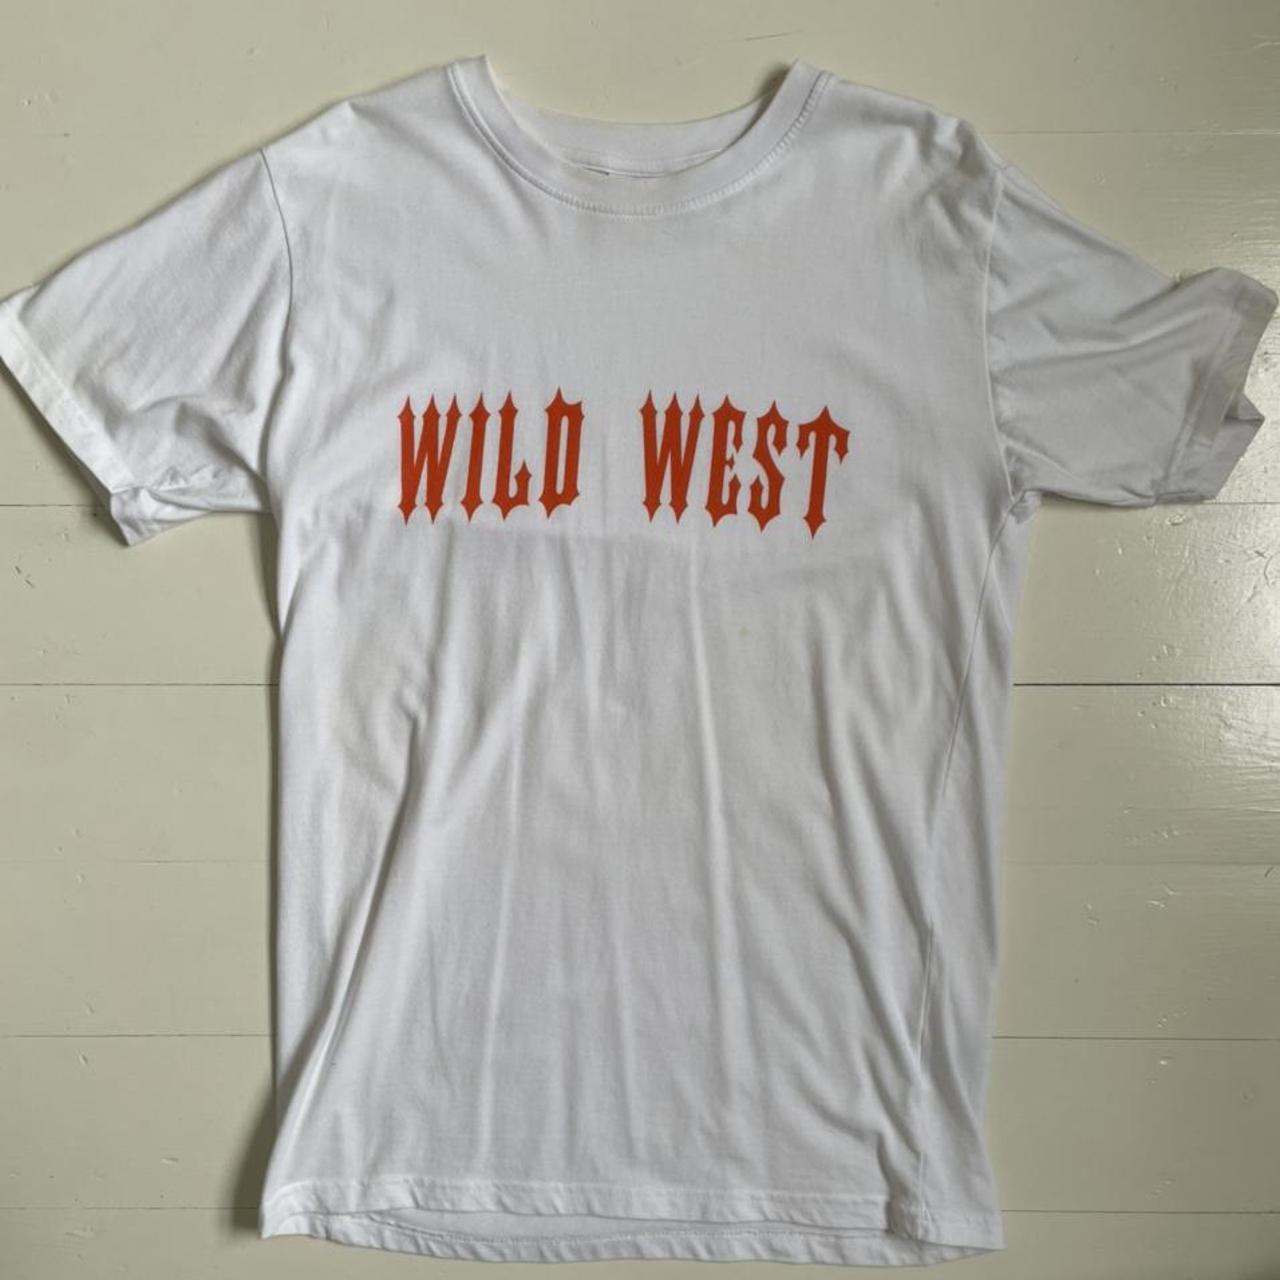 Central Cee x Trapstar - Wild West T-Shirt White -... - Depop